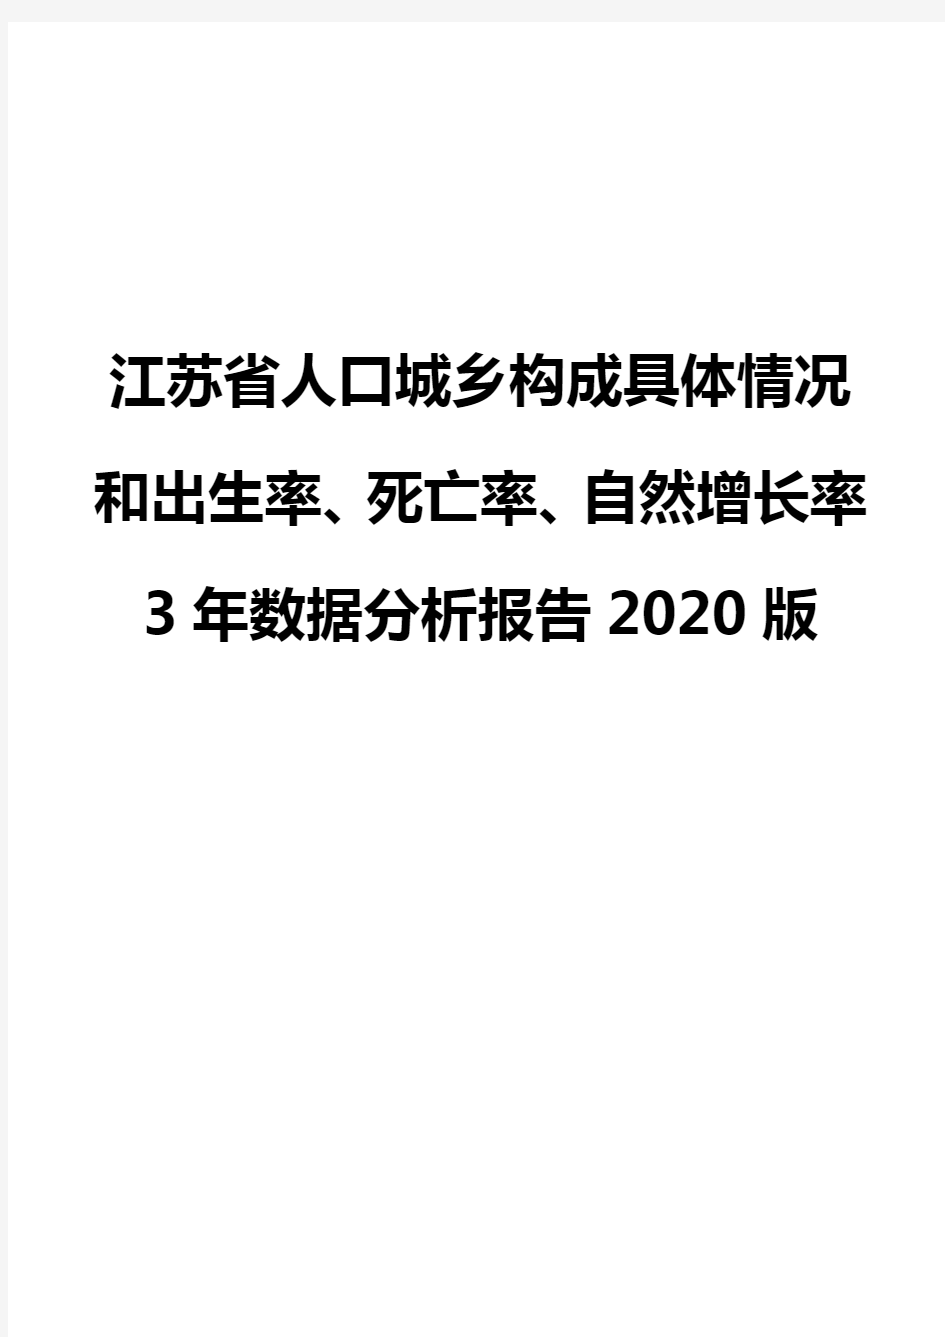 江苏省人口城乡构成具体情况和出生率、死亡率、自然增长率3年数据分析报告2020版